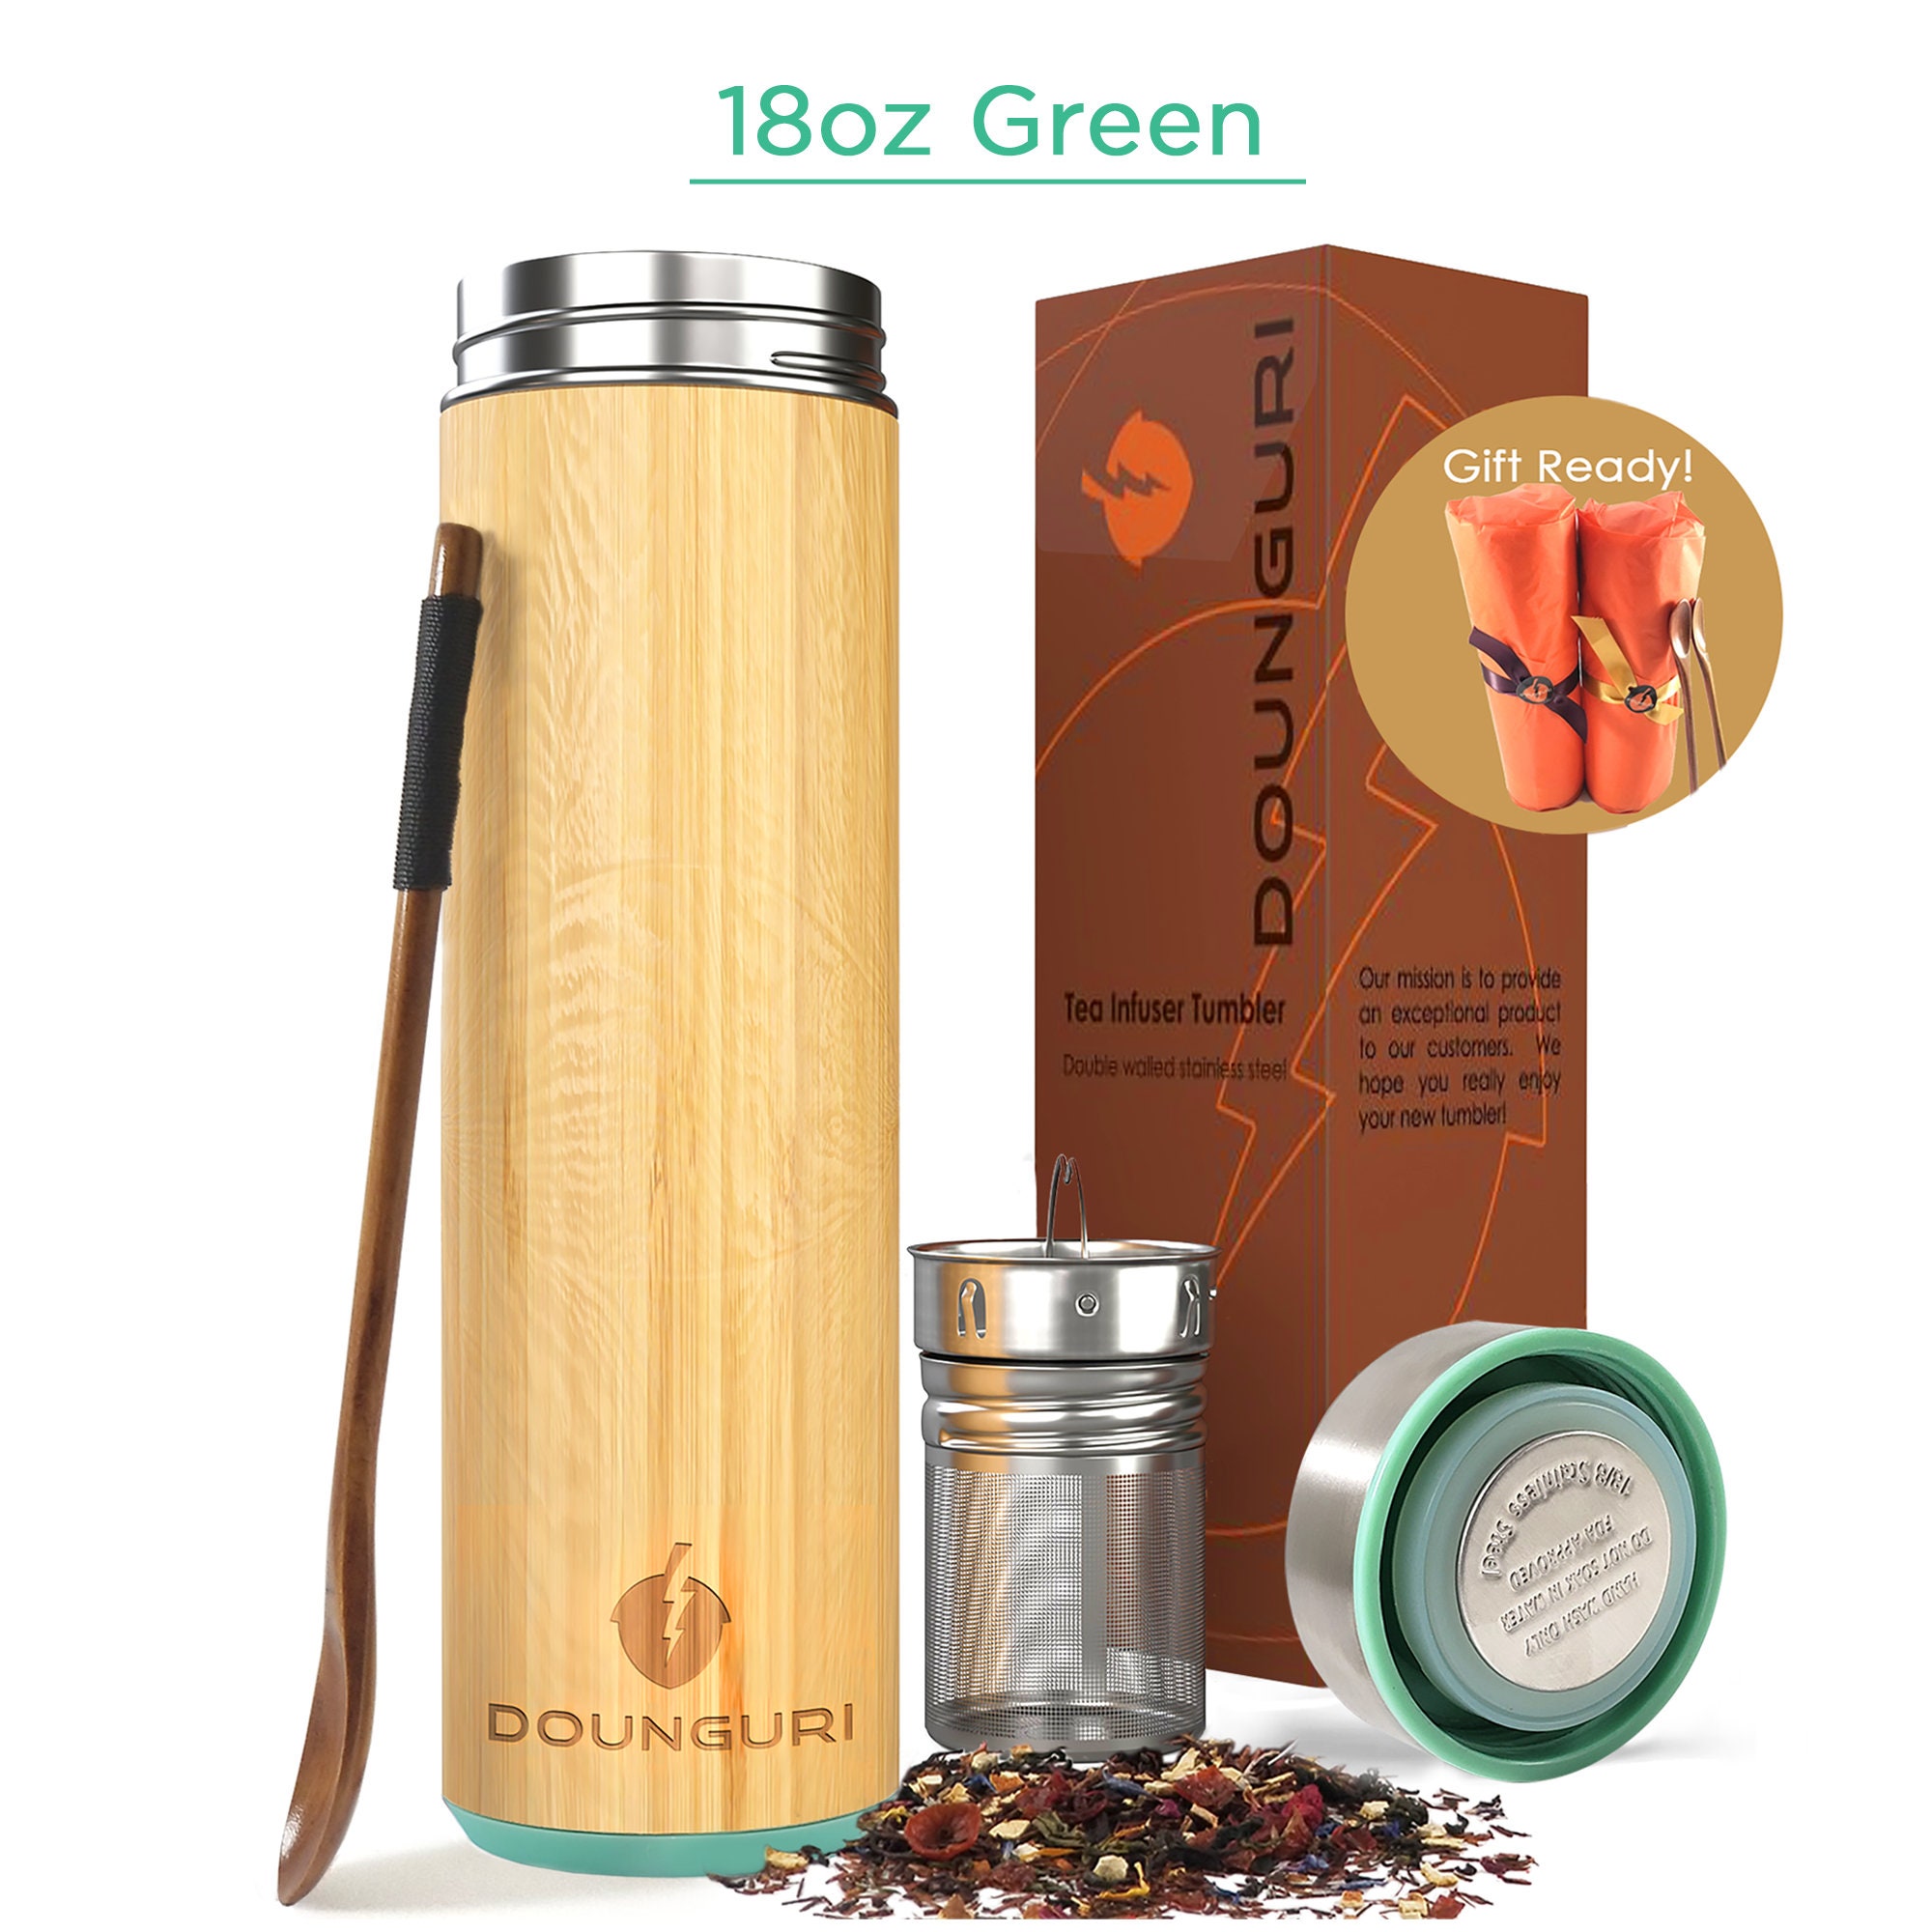 Leaf Life Premium Bamboo Tumbler 17oz Vacuum Insulated Tea Infuser